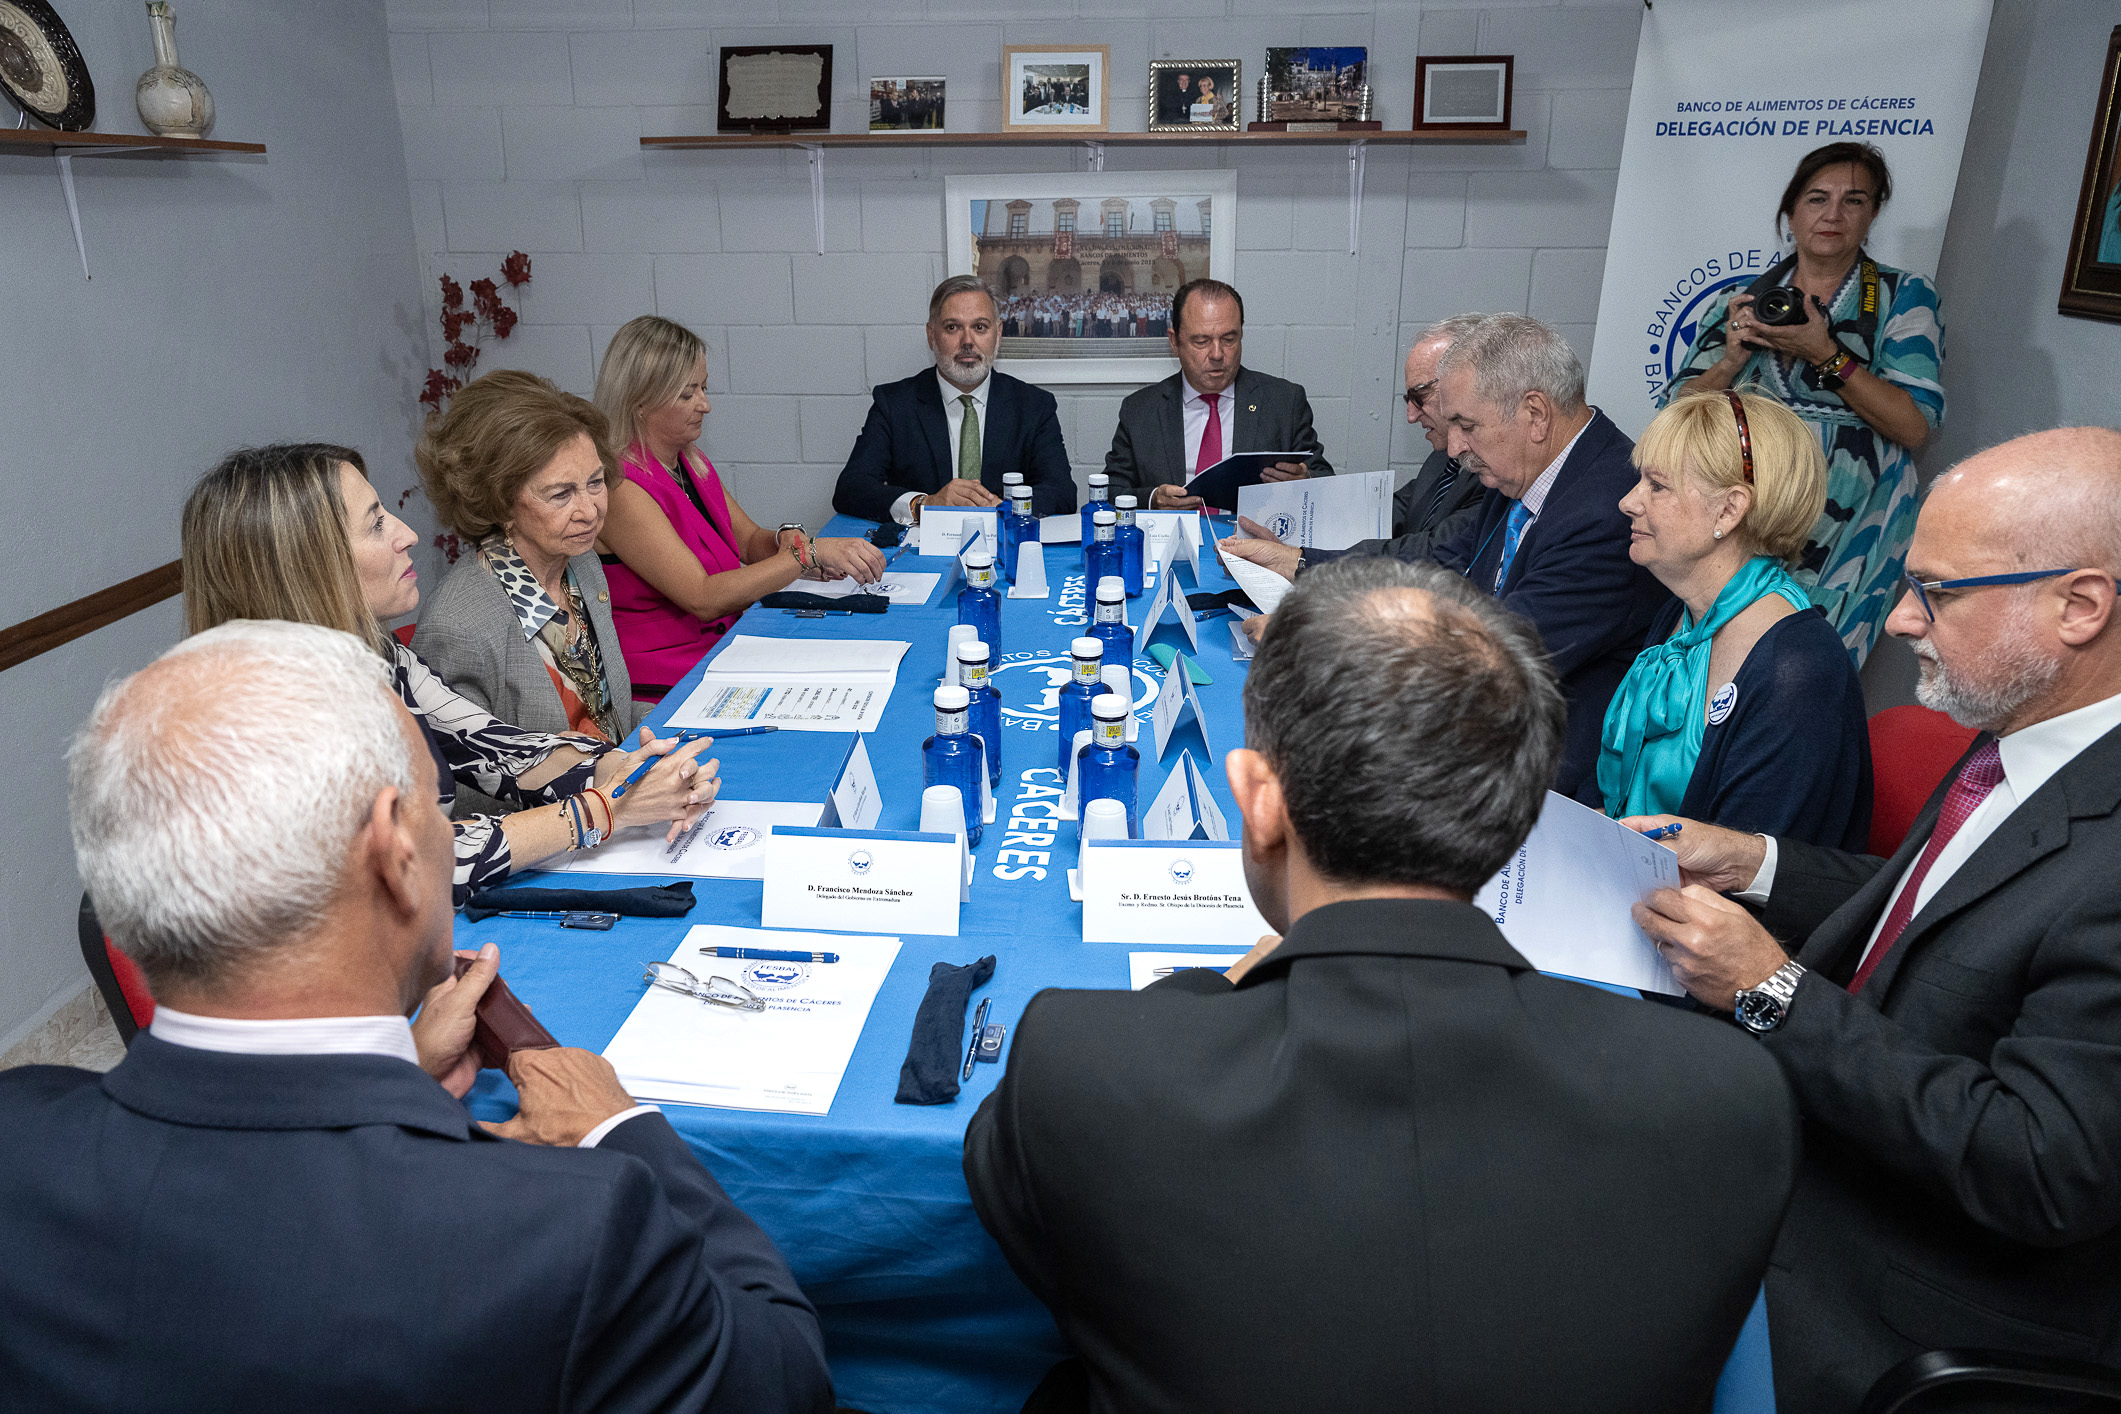 Reunión de autoridades durante la visita de Doña Sofía al Banco de Alimentos de Plasencia